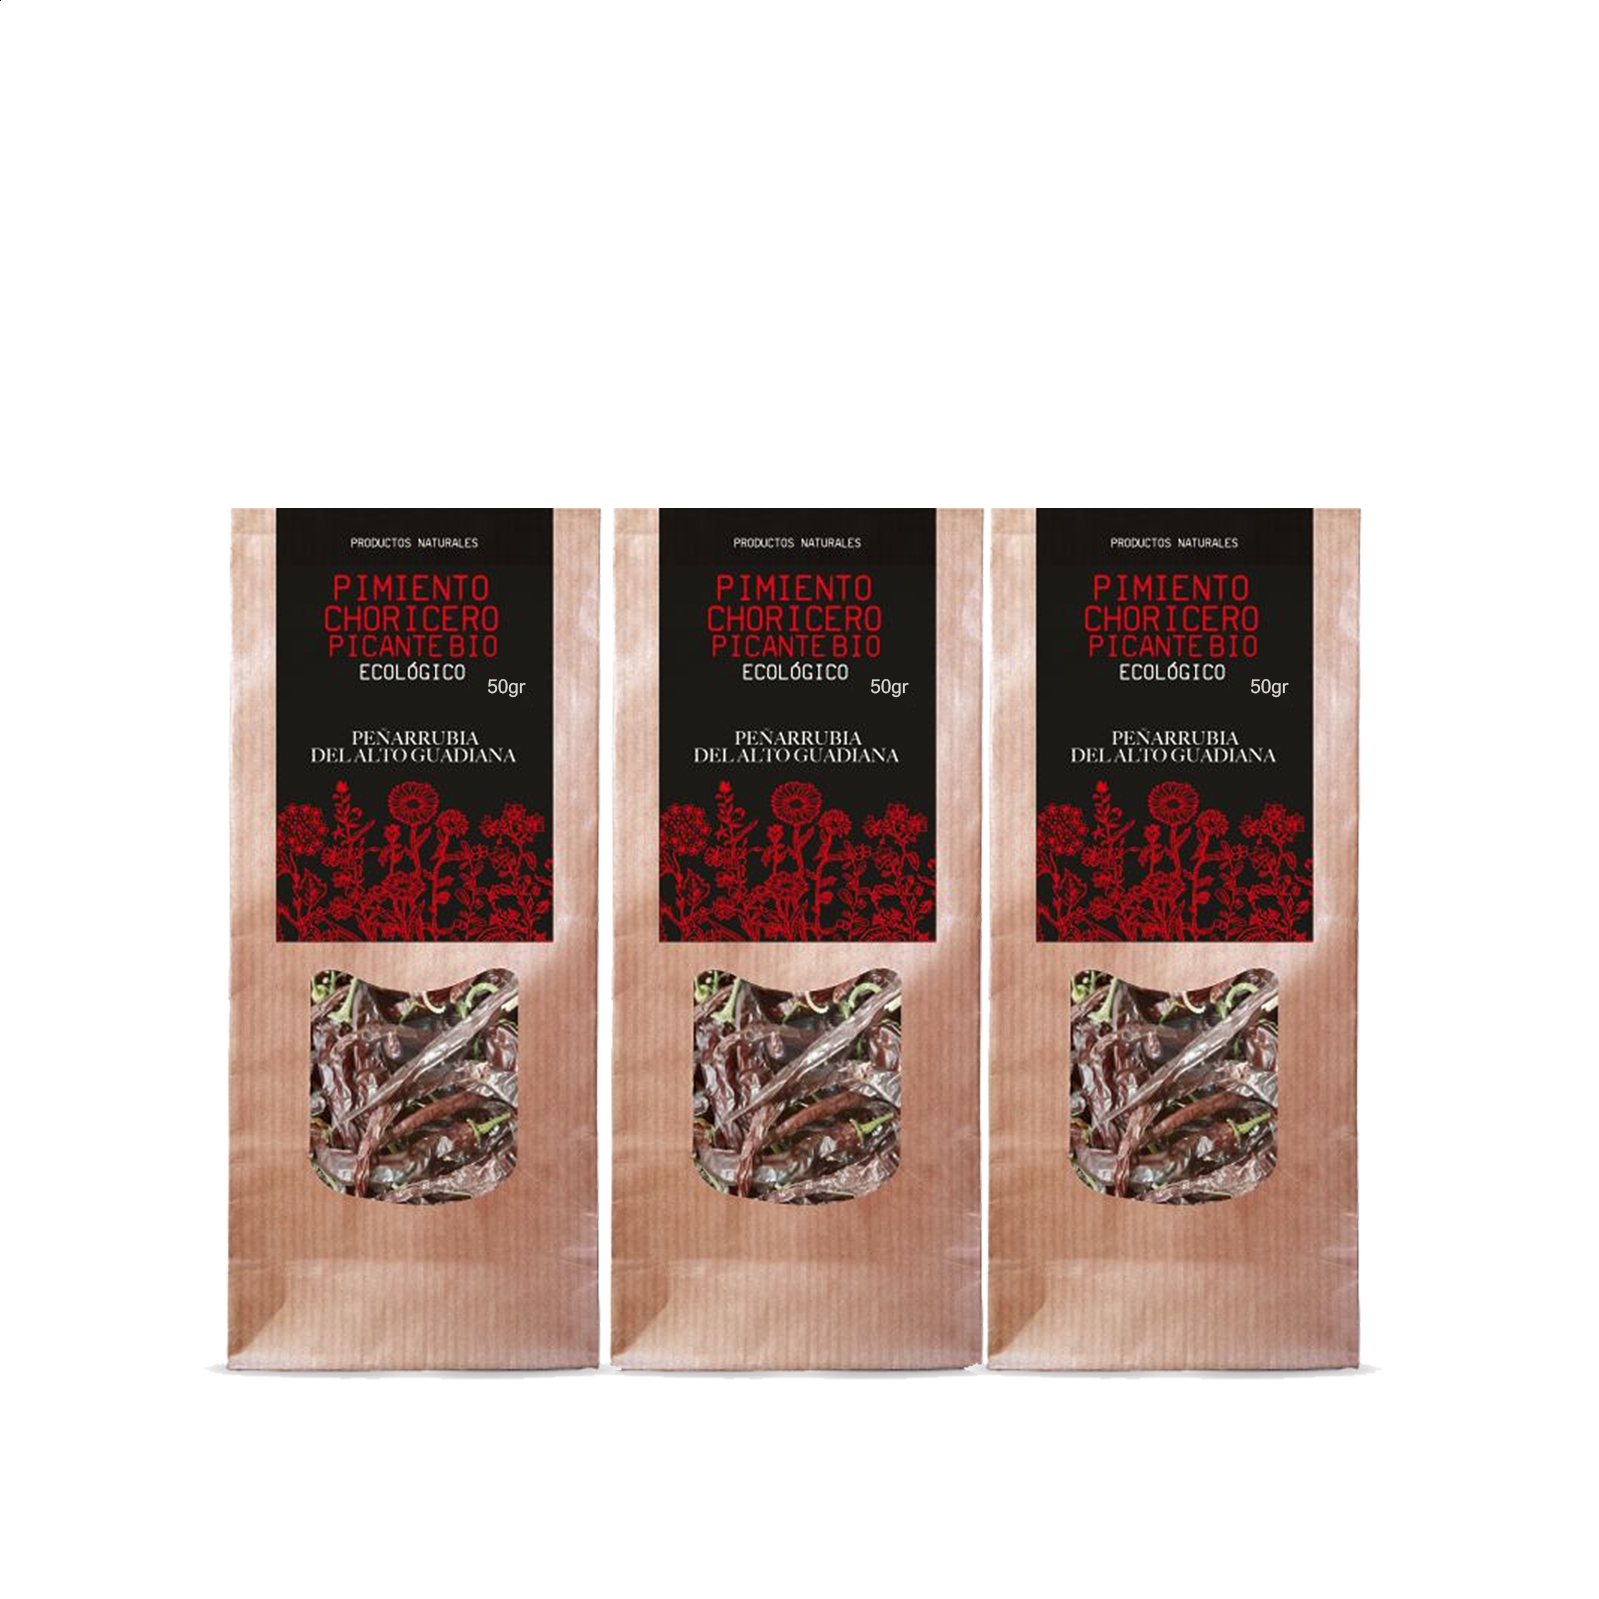 Guadiana Ecológico - Pimiento Choricero Picante Bio bolsa de 50g, 3uds